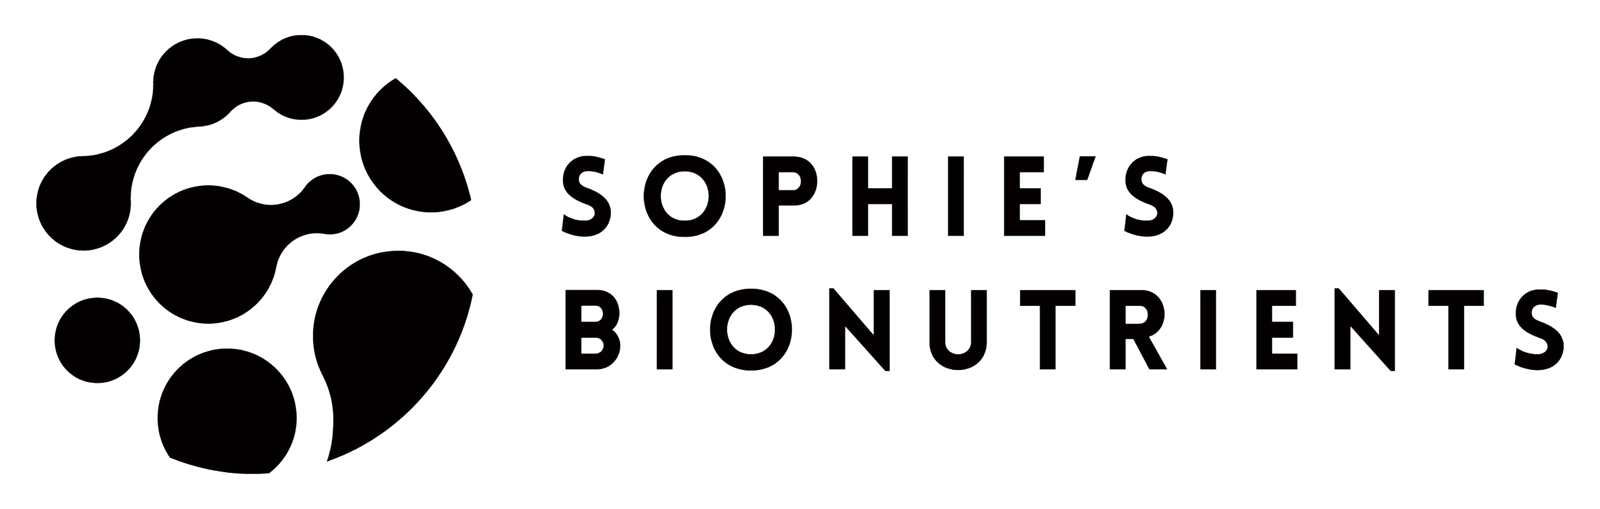 Sophie's Bionutrients